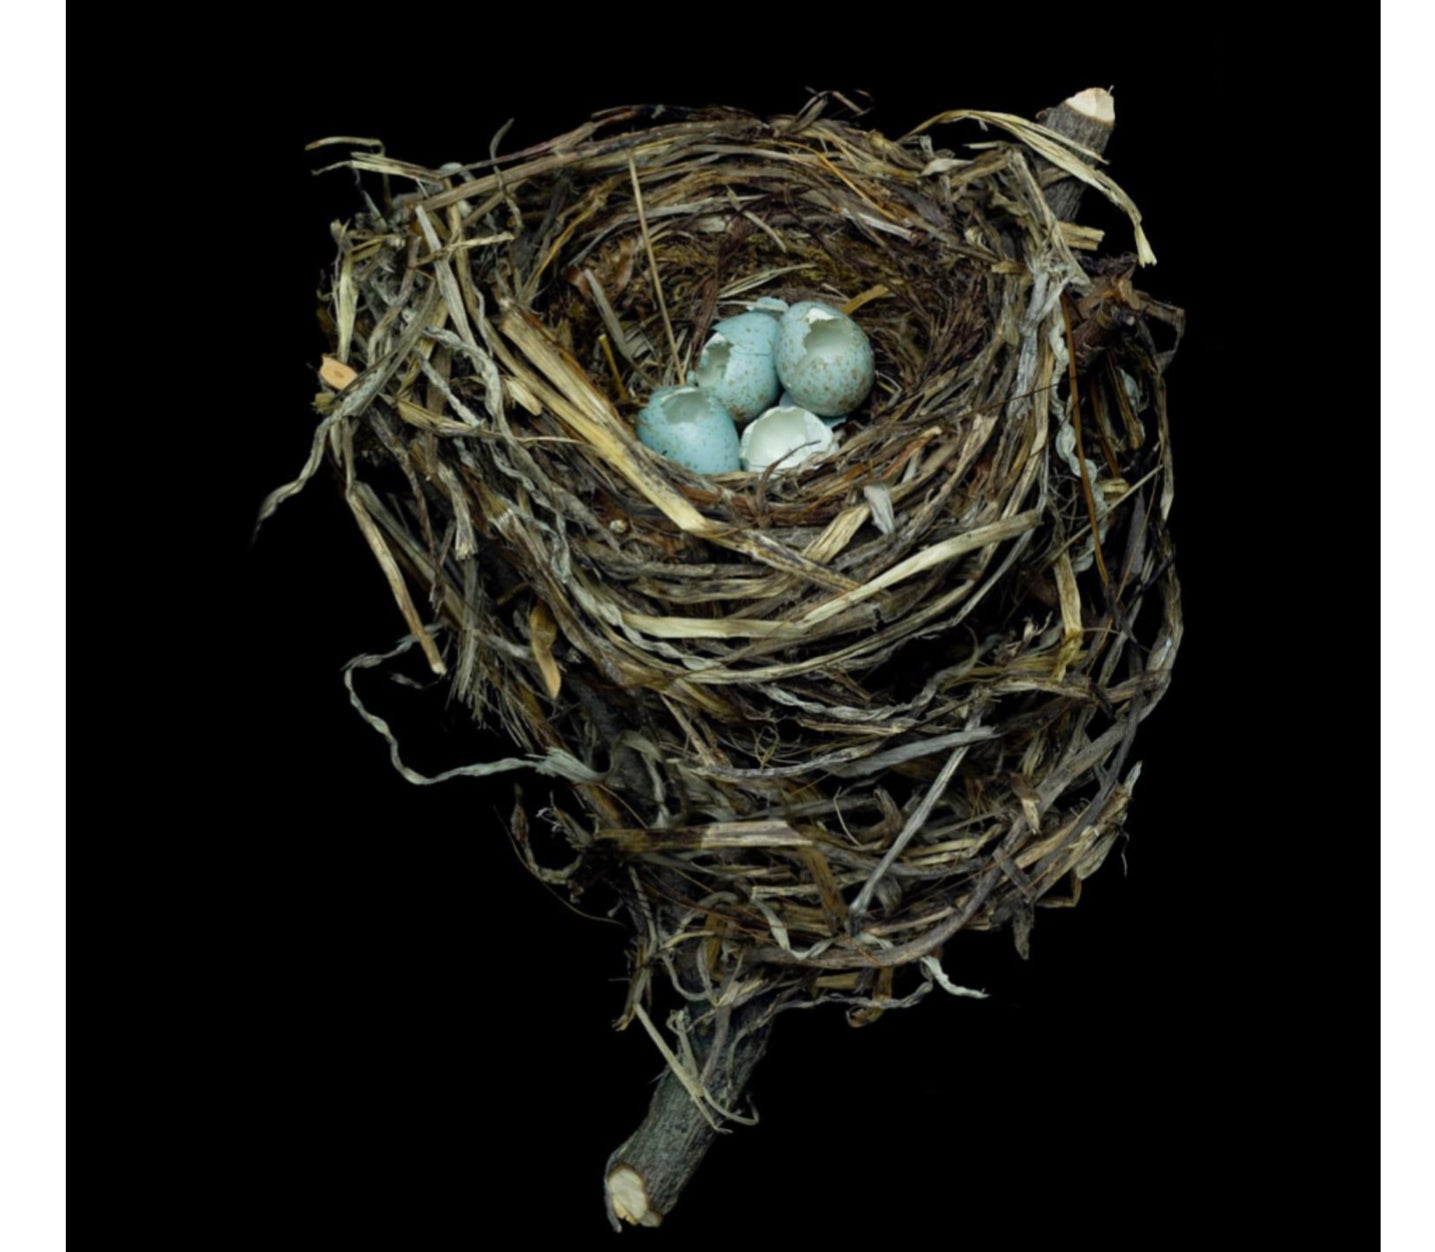 Sharon Beals Lithographie eines Swainson's Thrush Nest